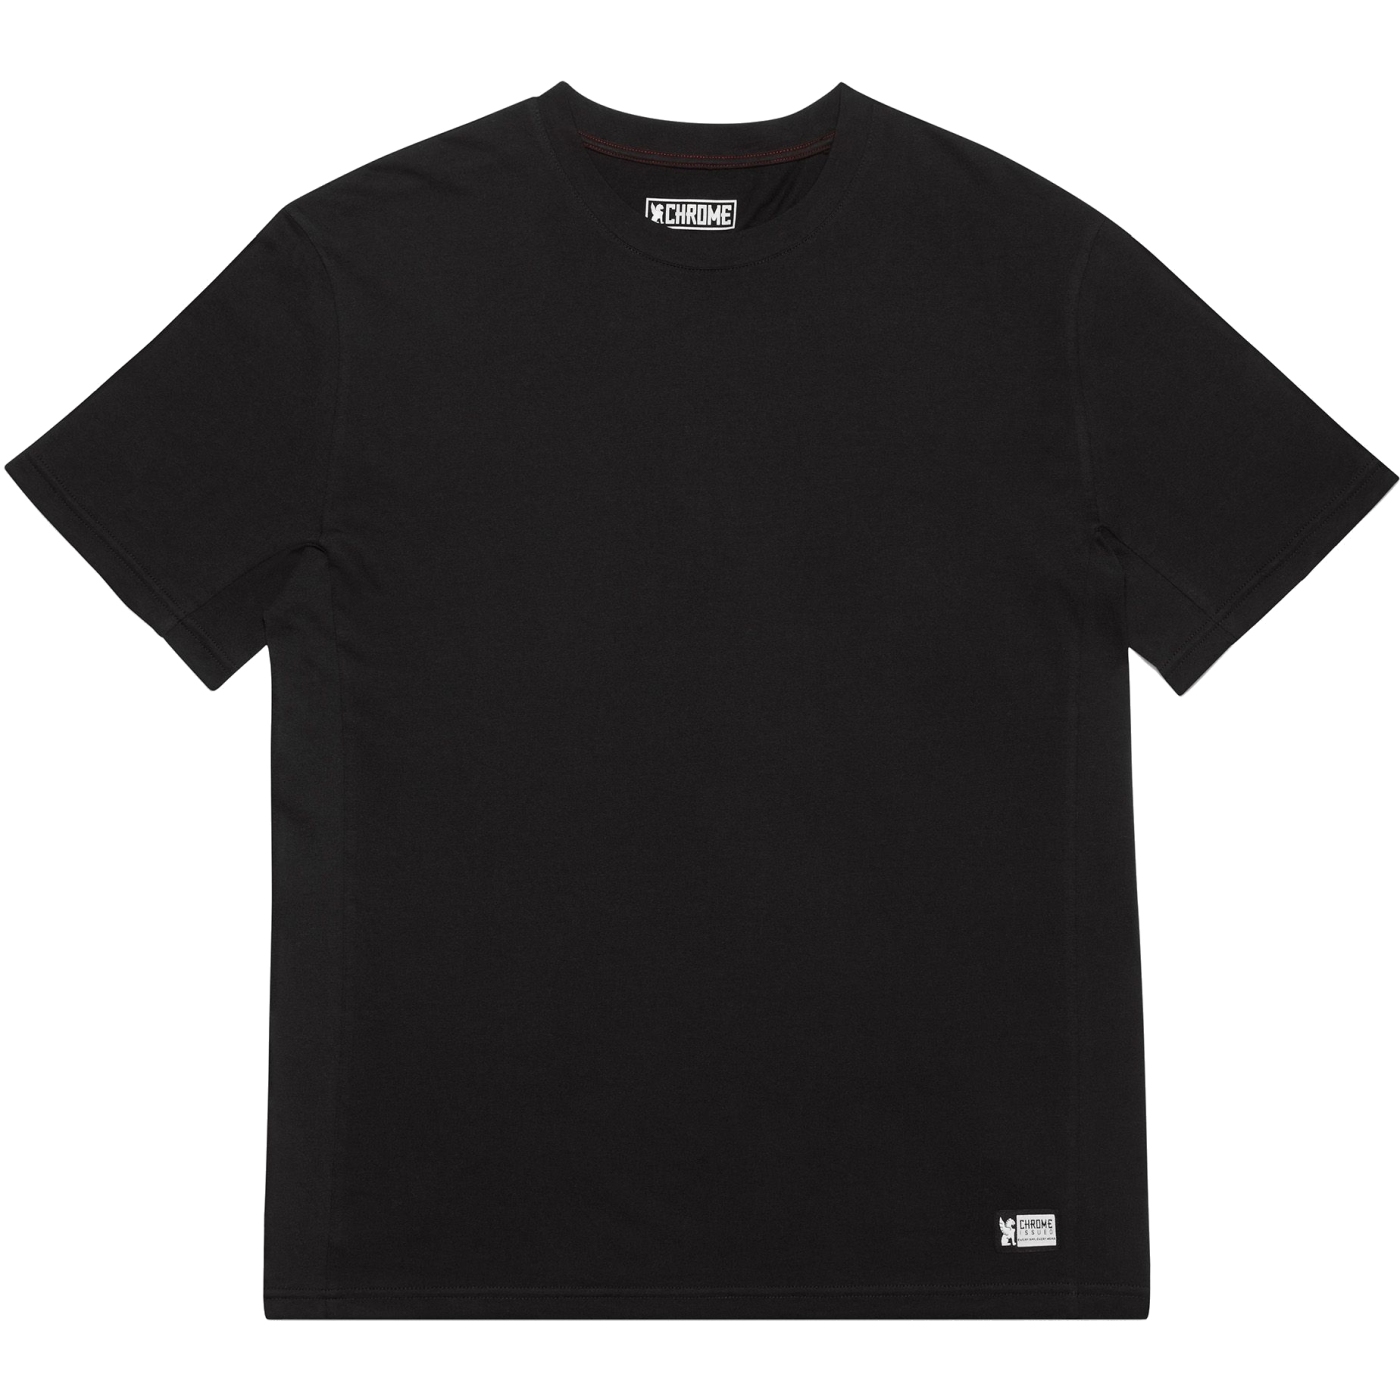 Bild von CHROME Issued Short Sleeve Tee T-Shirt - Black